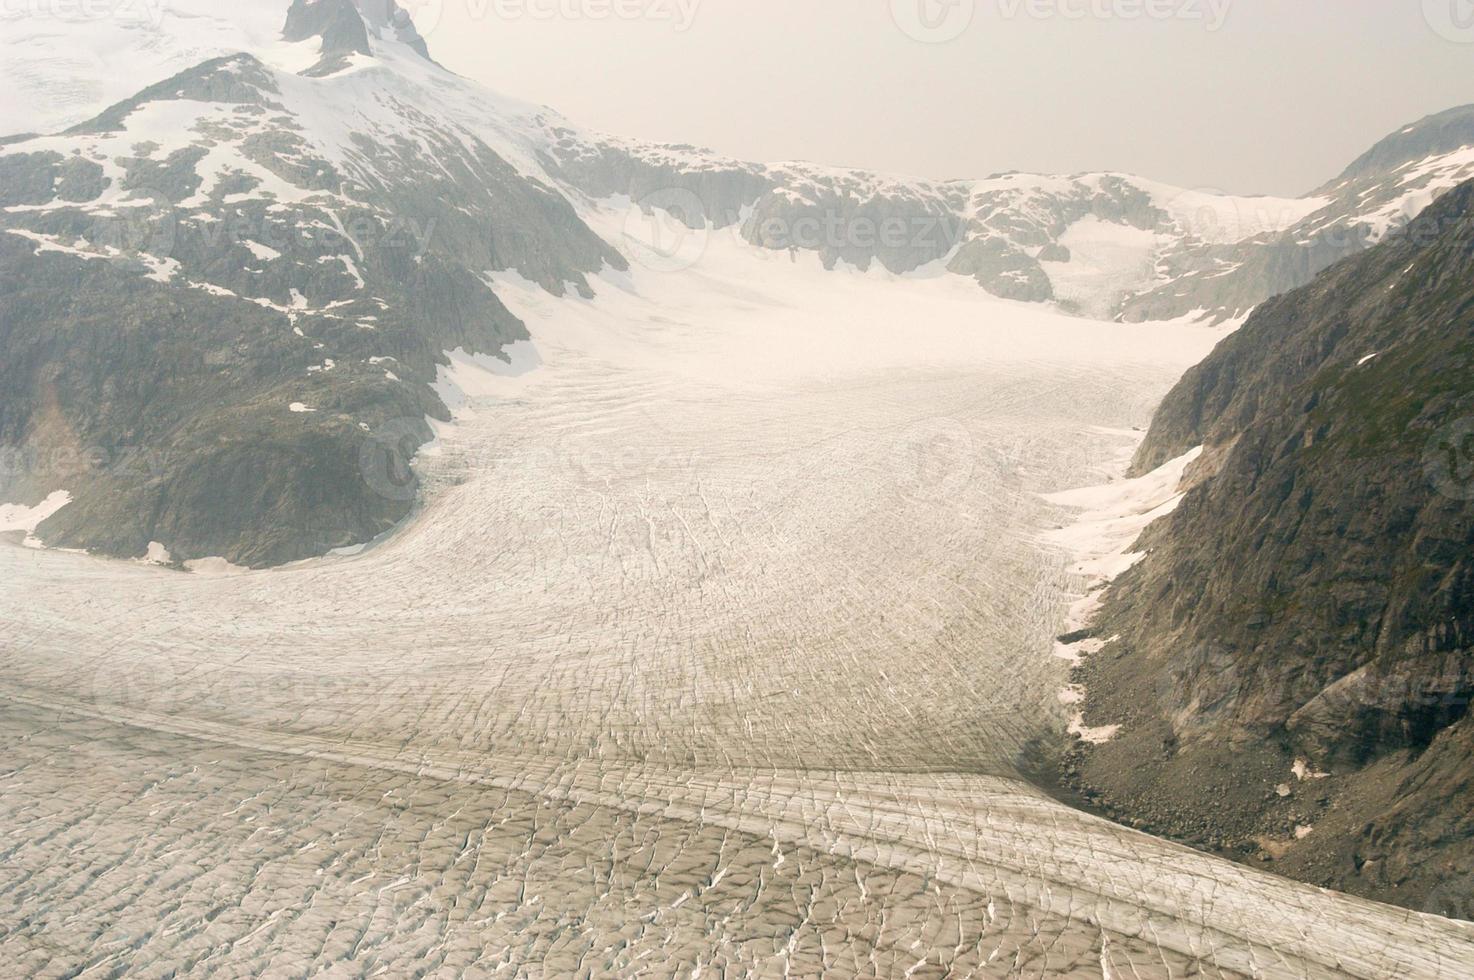 Hubbard-Gletscher im Osten Alaskas und Teil von Yukon, Kanada, und nach Gardiner Hubbard benannt. foto